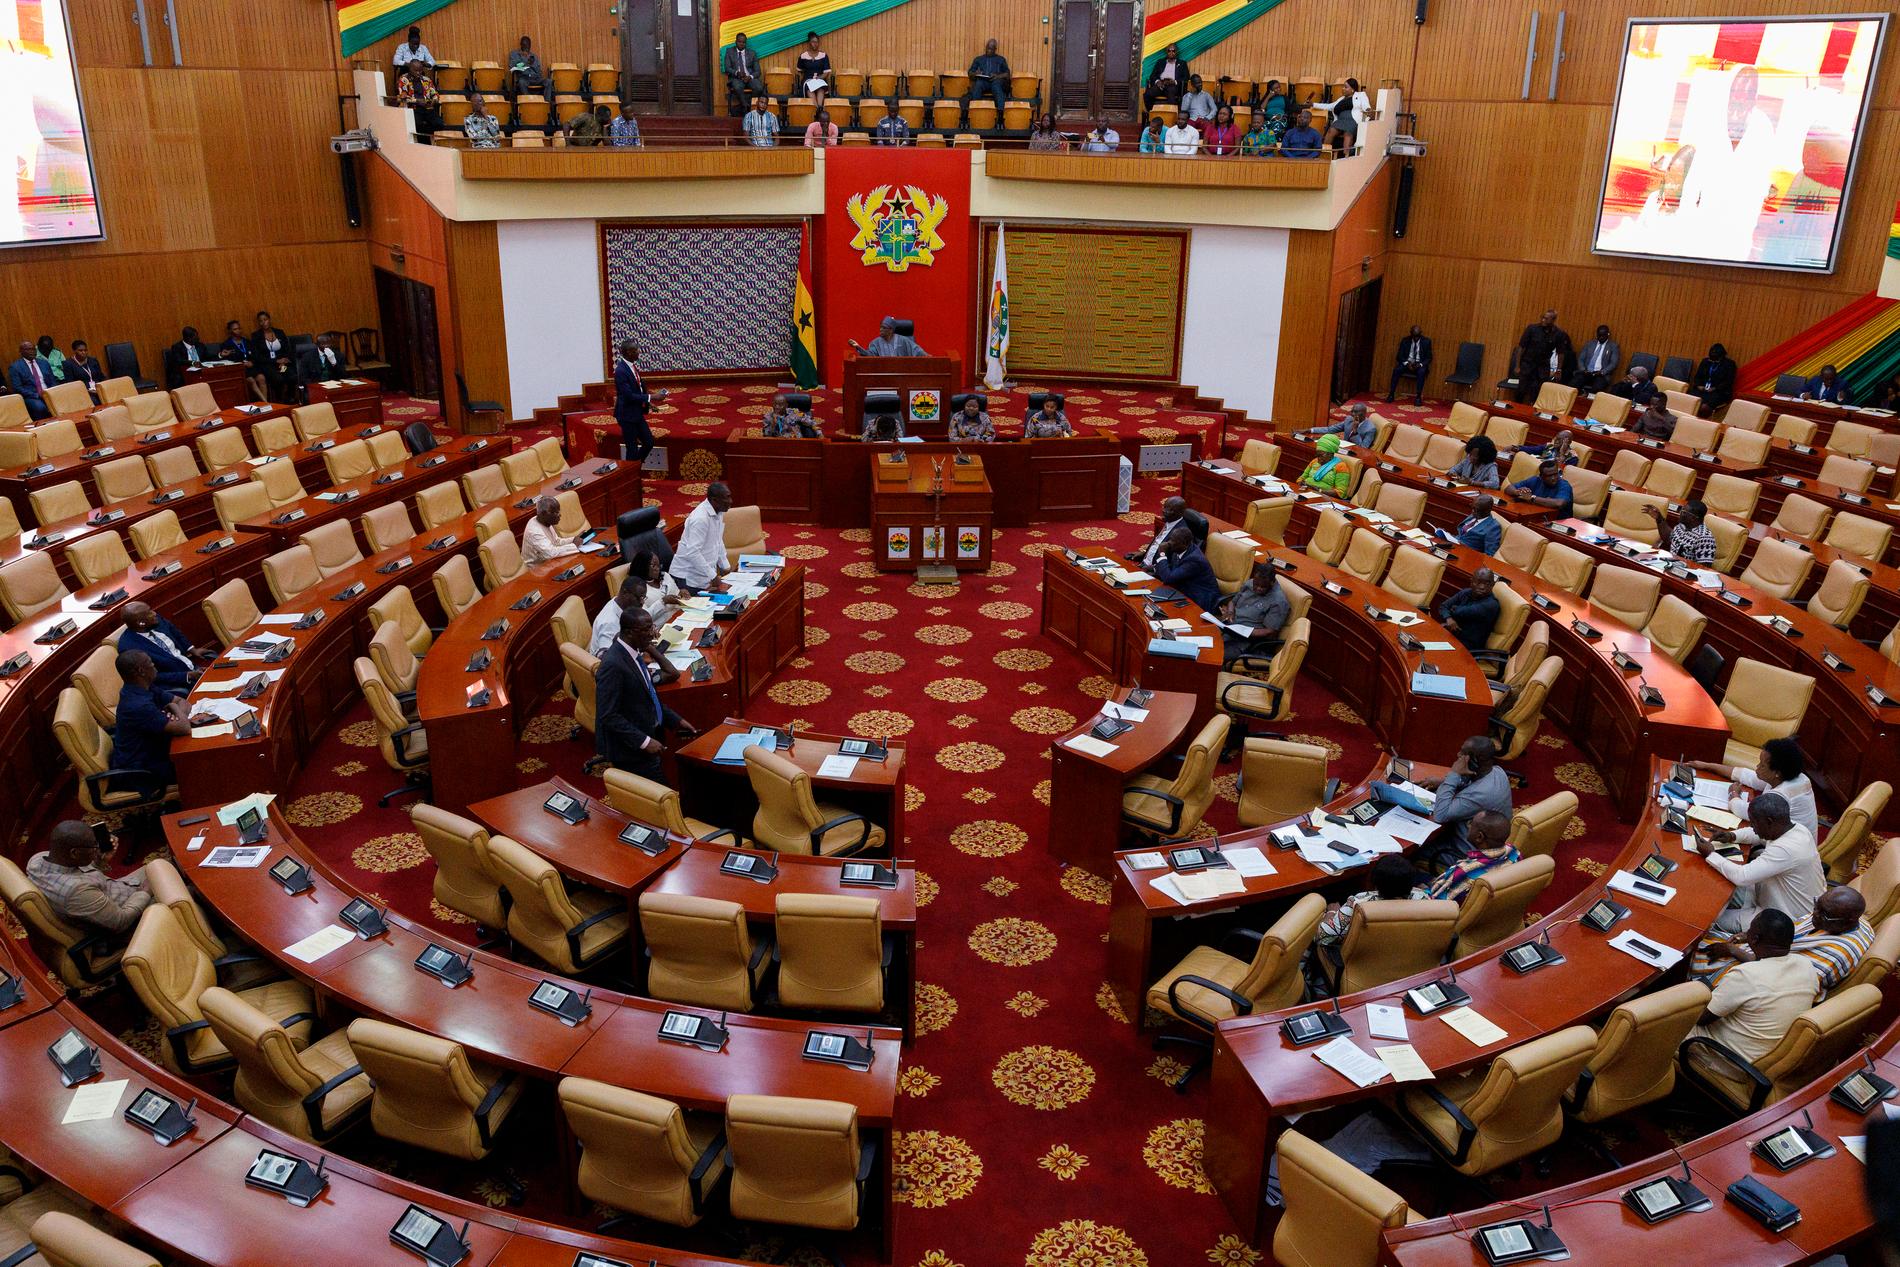 Parlamentet i Accra i Ghana röstade för den kontroversiella lagen under onsdagen.